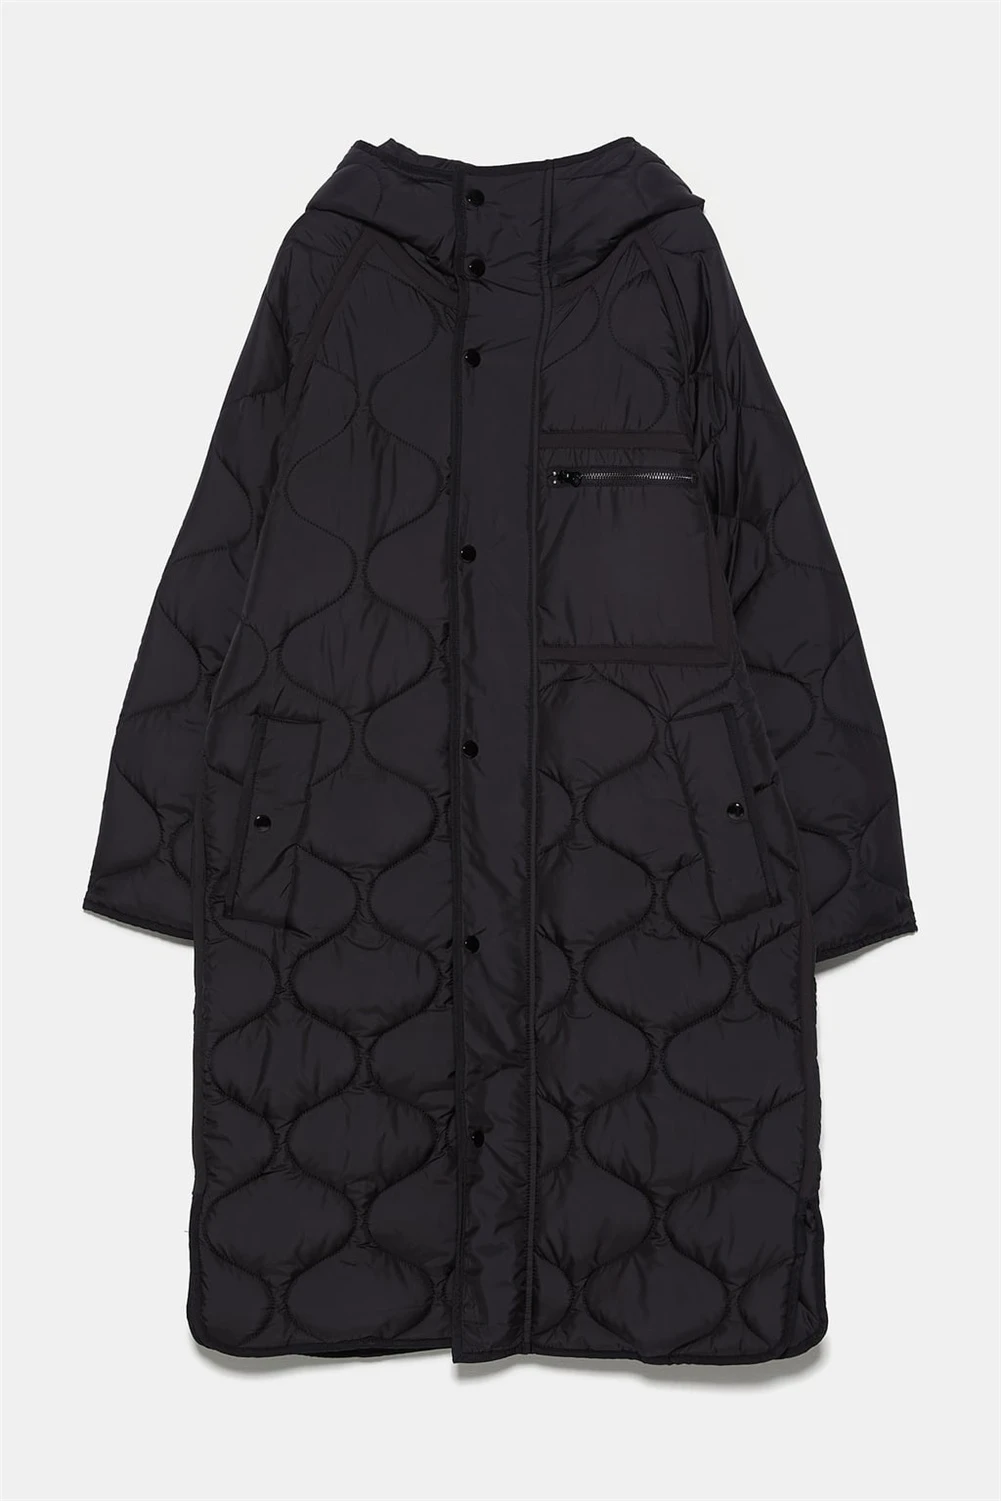 ZA Женская одежда из хлопка, модное новое зимнее свободное хлопковое пальто, богемное женское приталенное пальто с круглым вырезом и длинными рукавами